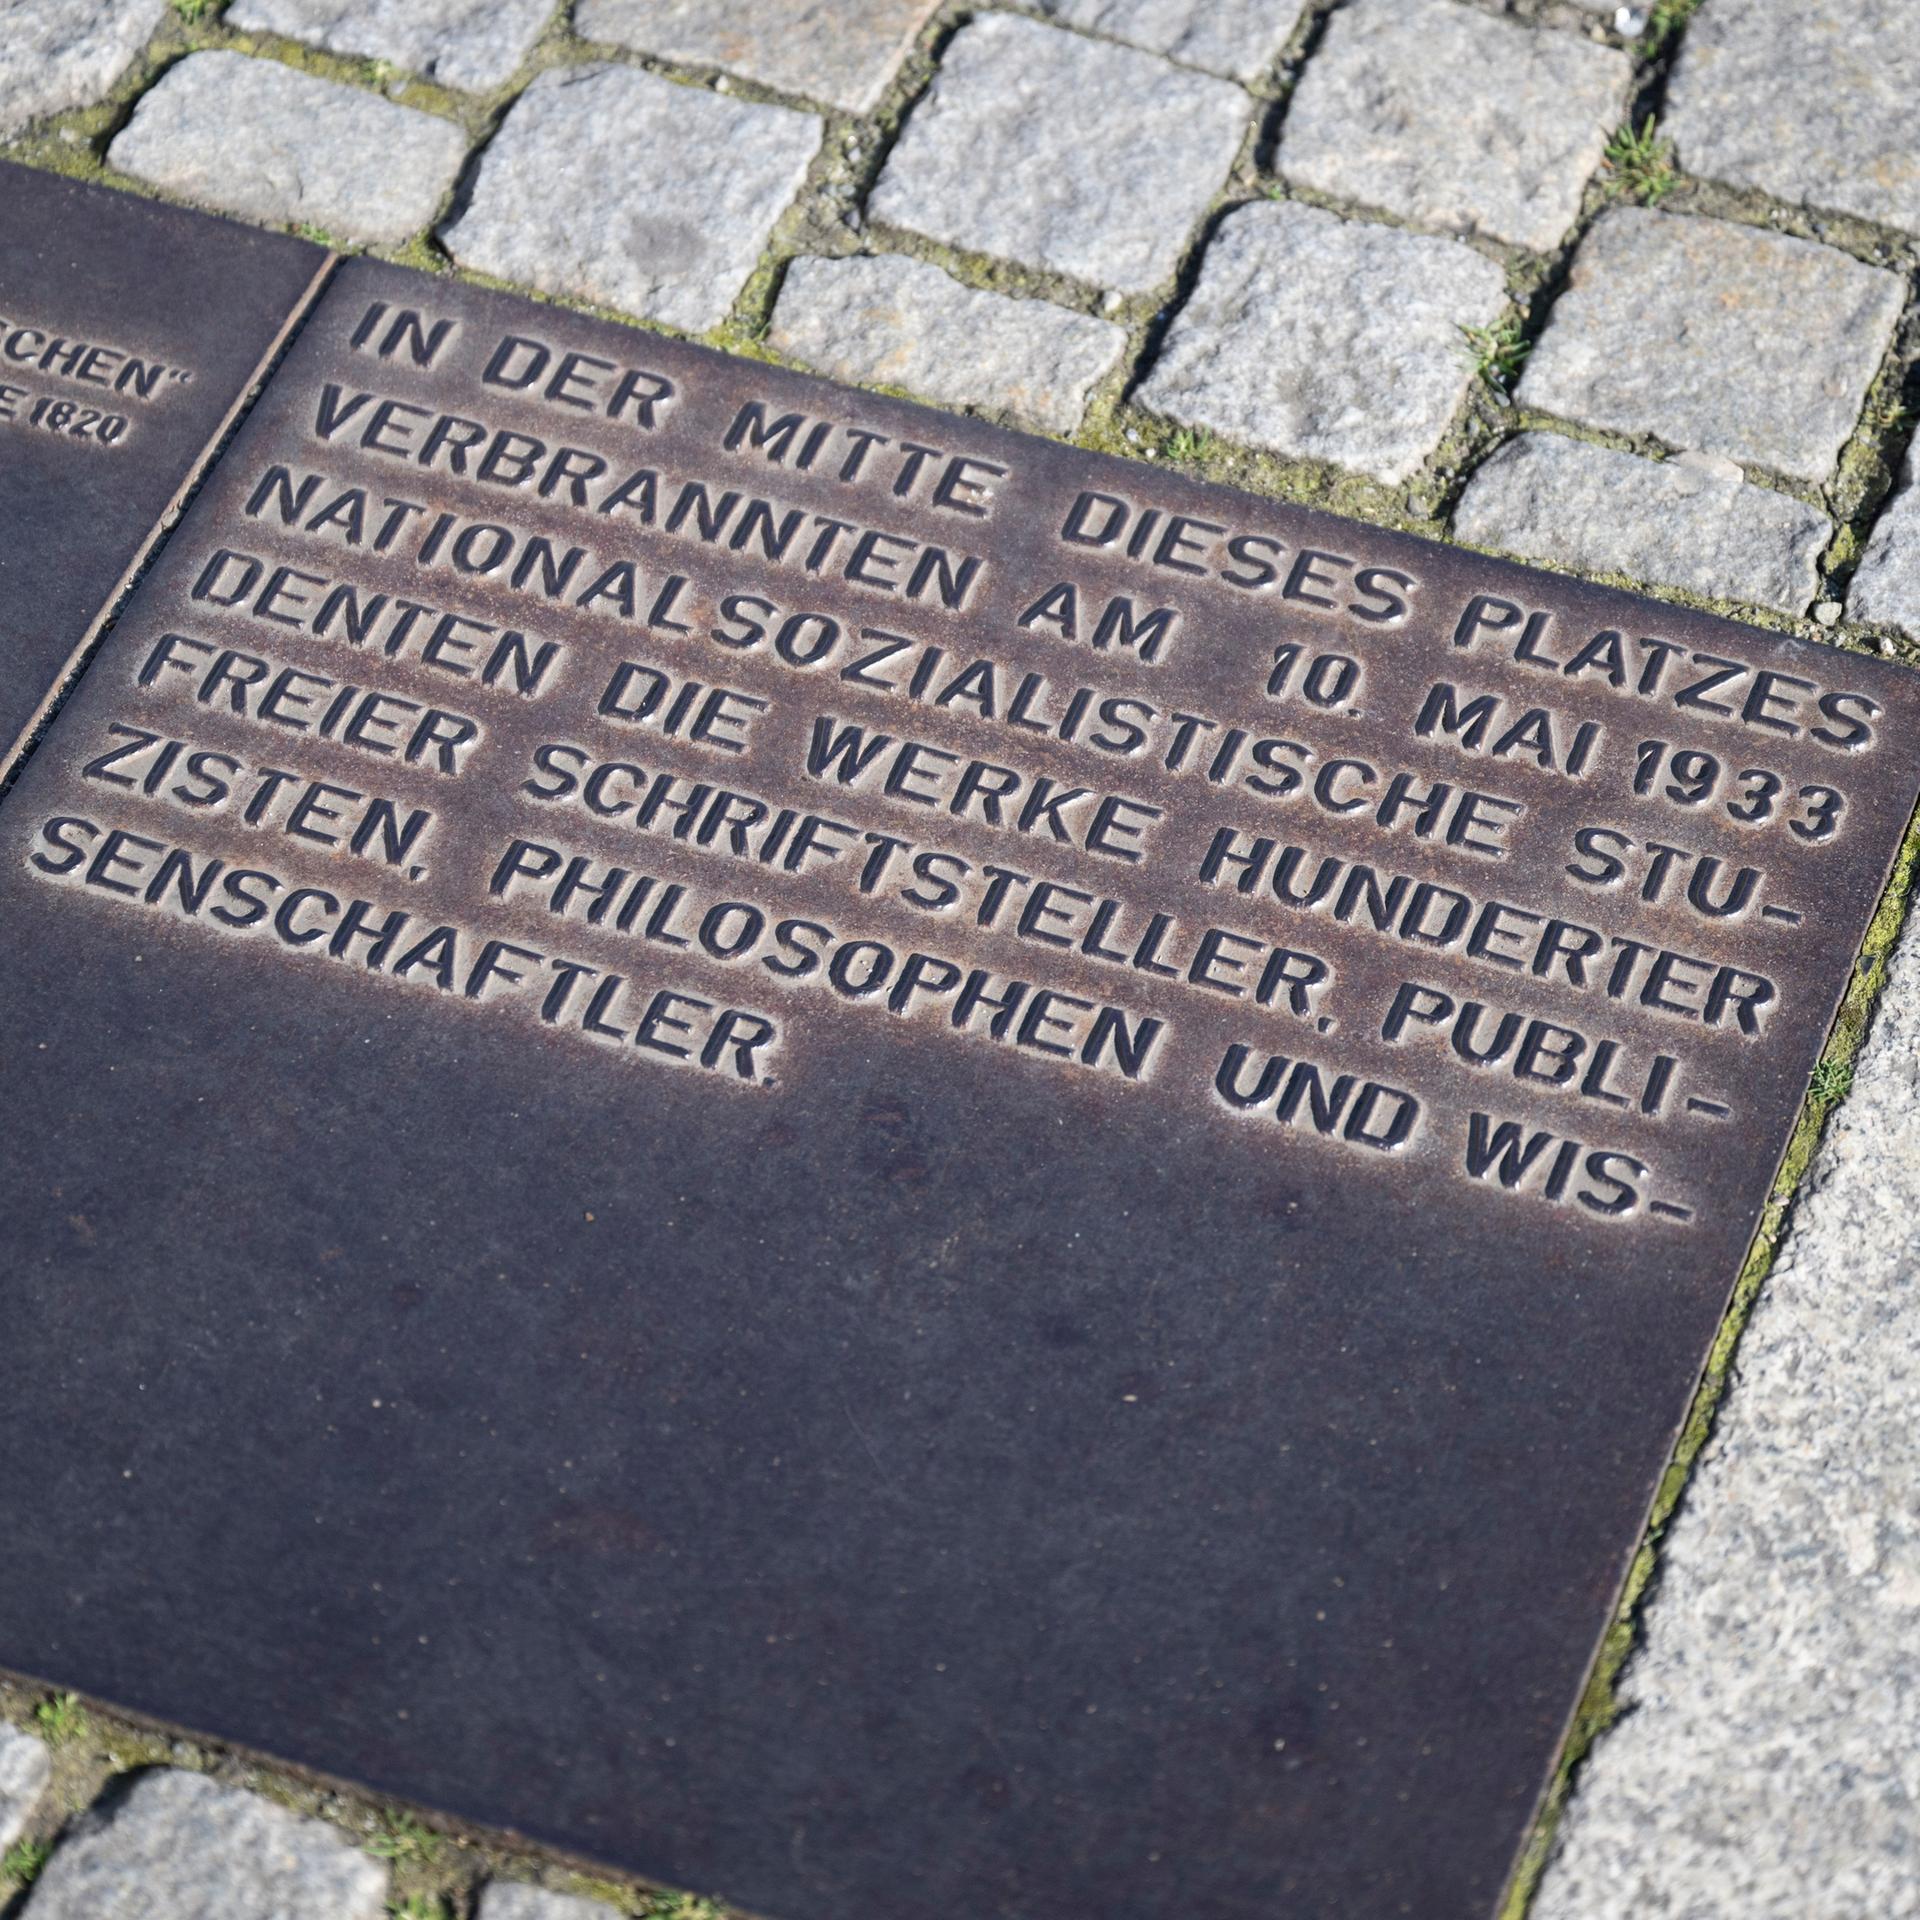 Eine Metallplakette erinnert an die Bücherverbrennung vom 10. Mai 1933 und würdigt die von den Nationalsozialisten verfolgten Schriftsteller, Wissenschaftler und Philosophen.